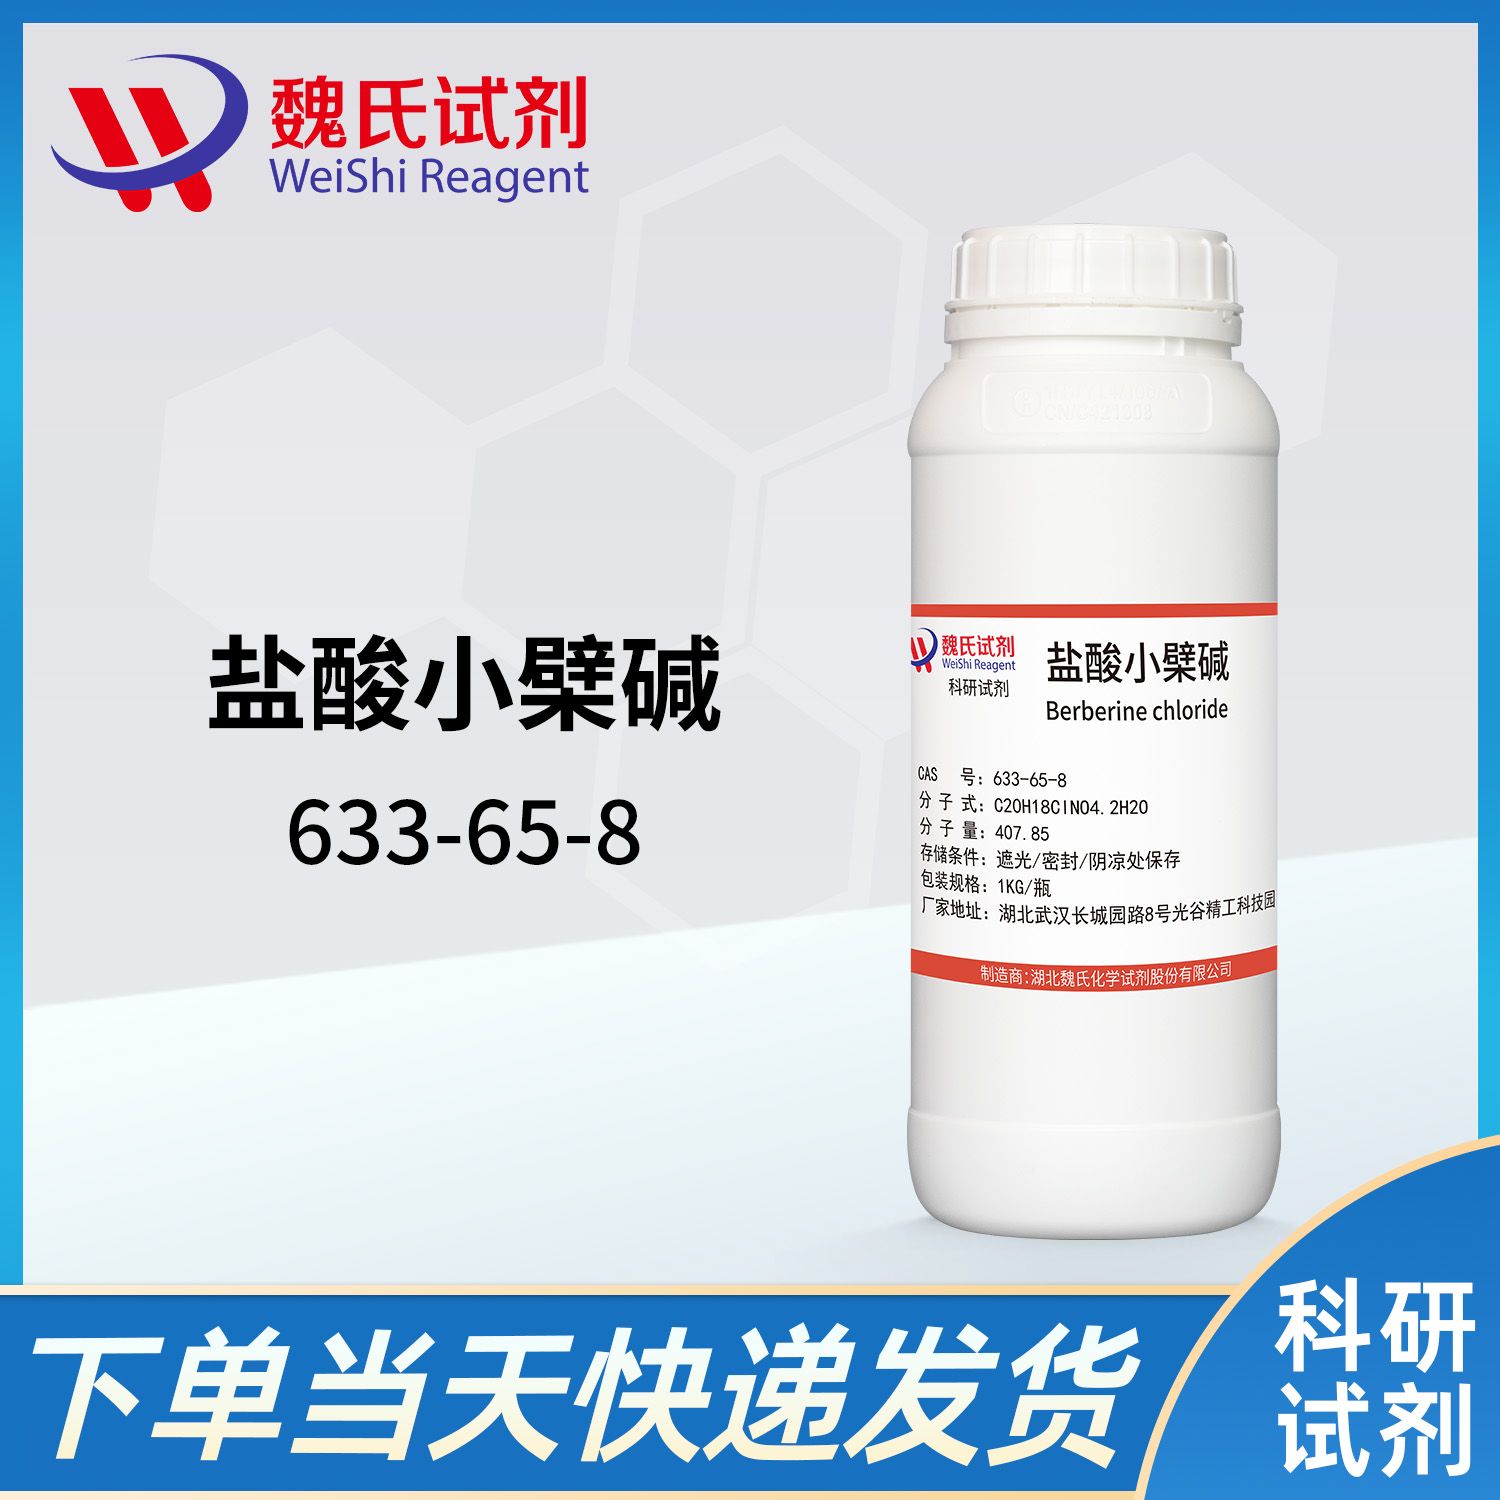 633-65-8/盐酸小檗碱-盐酸黄连素/Berberine hydrochloride